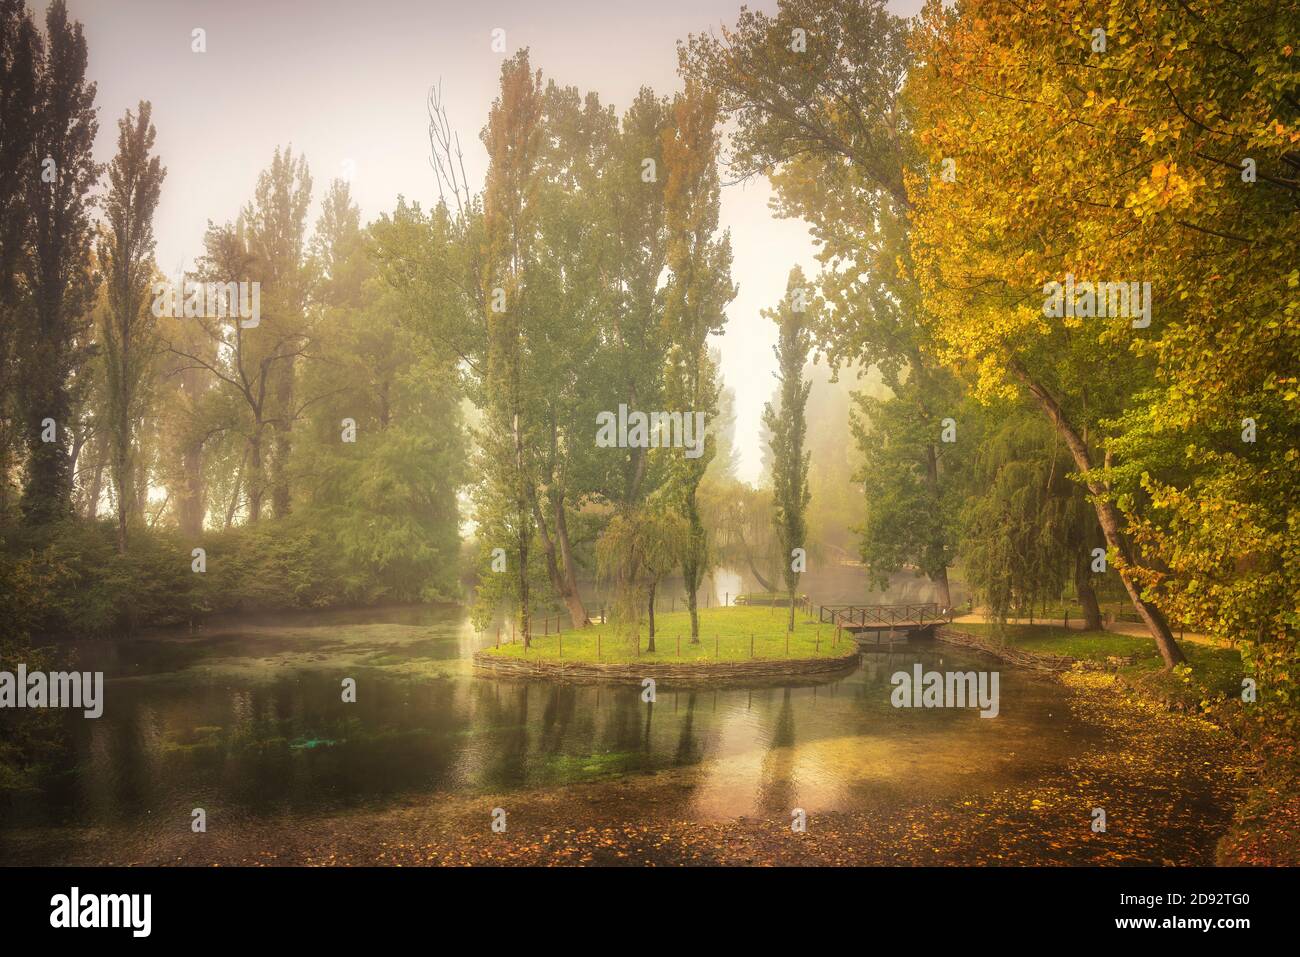 Quelle von Clitunno alten römischen Flussquellen Garten. Nebliger Morgen im Herbst. Perugia, Umbrien, Italien Stockfoto